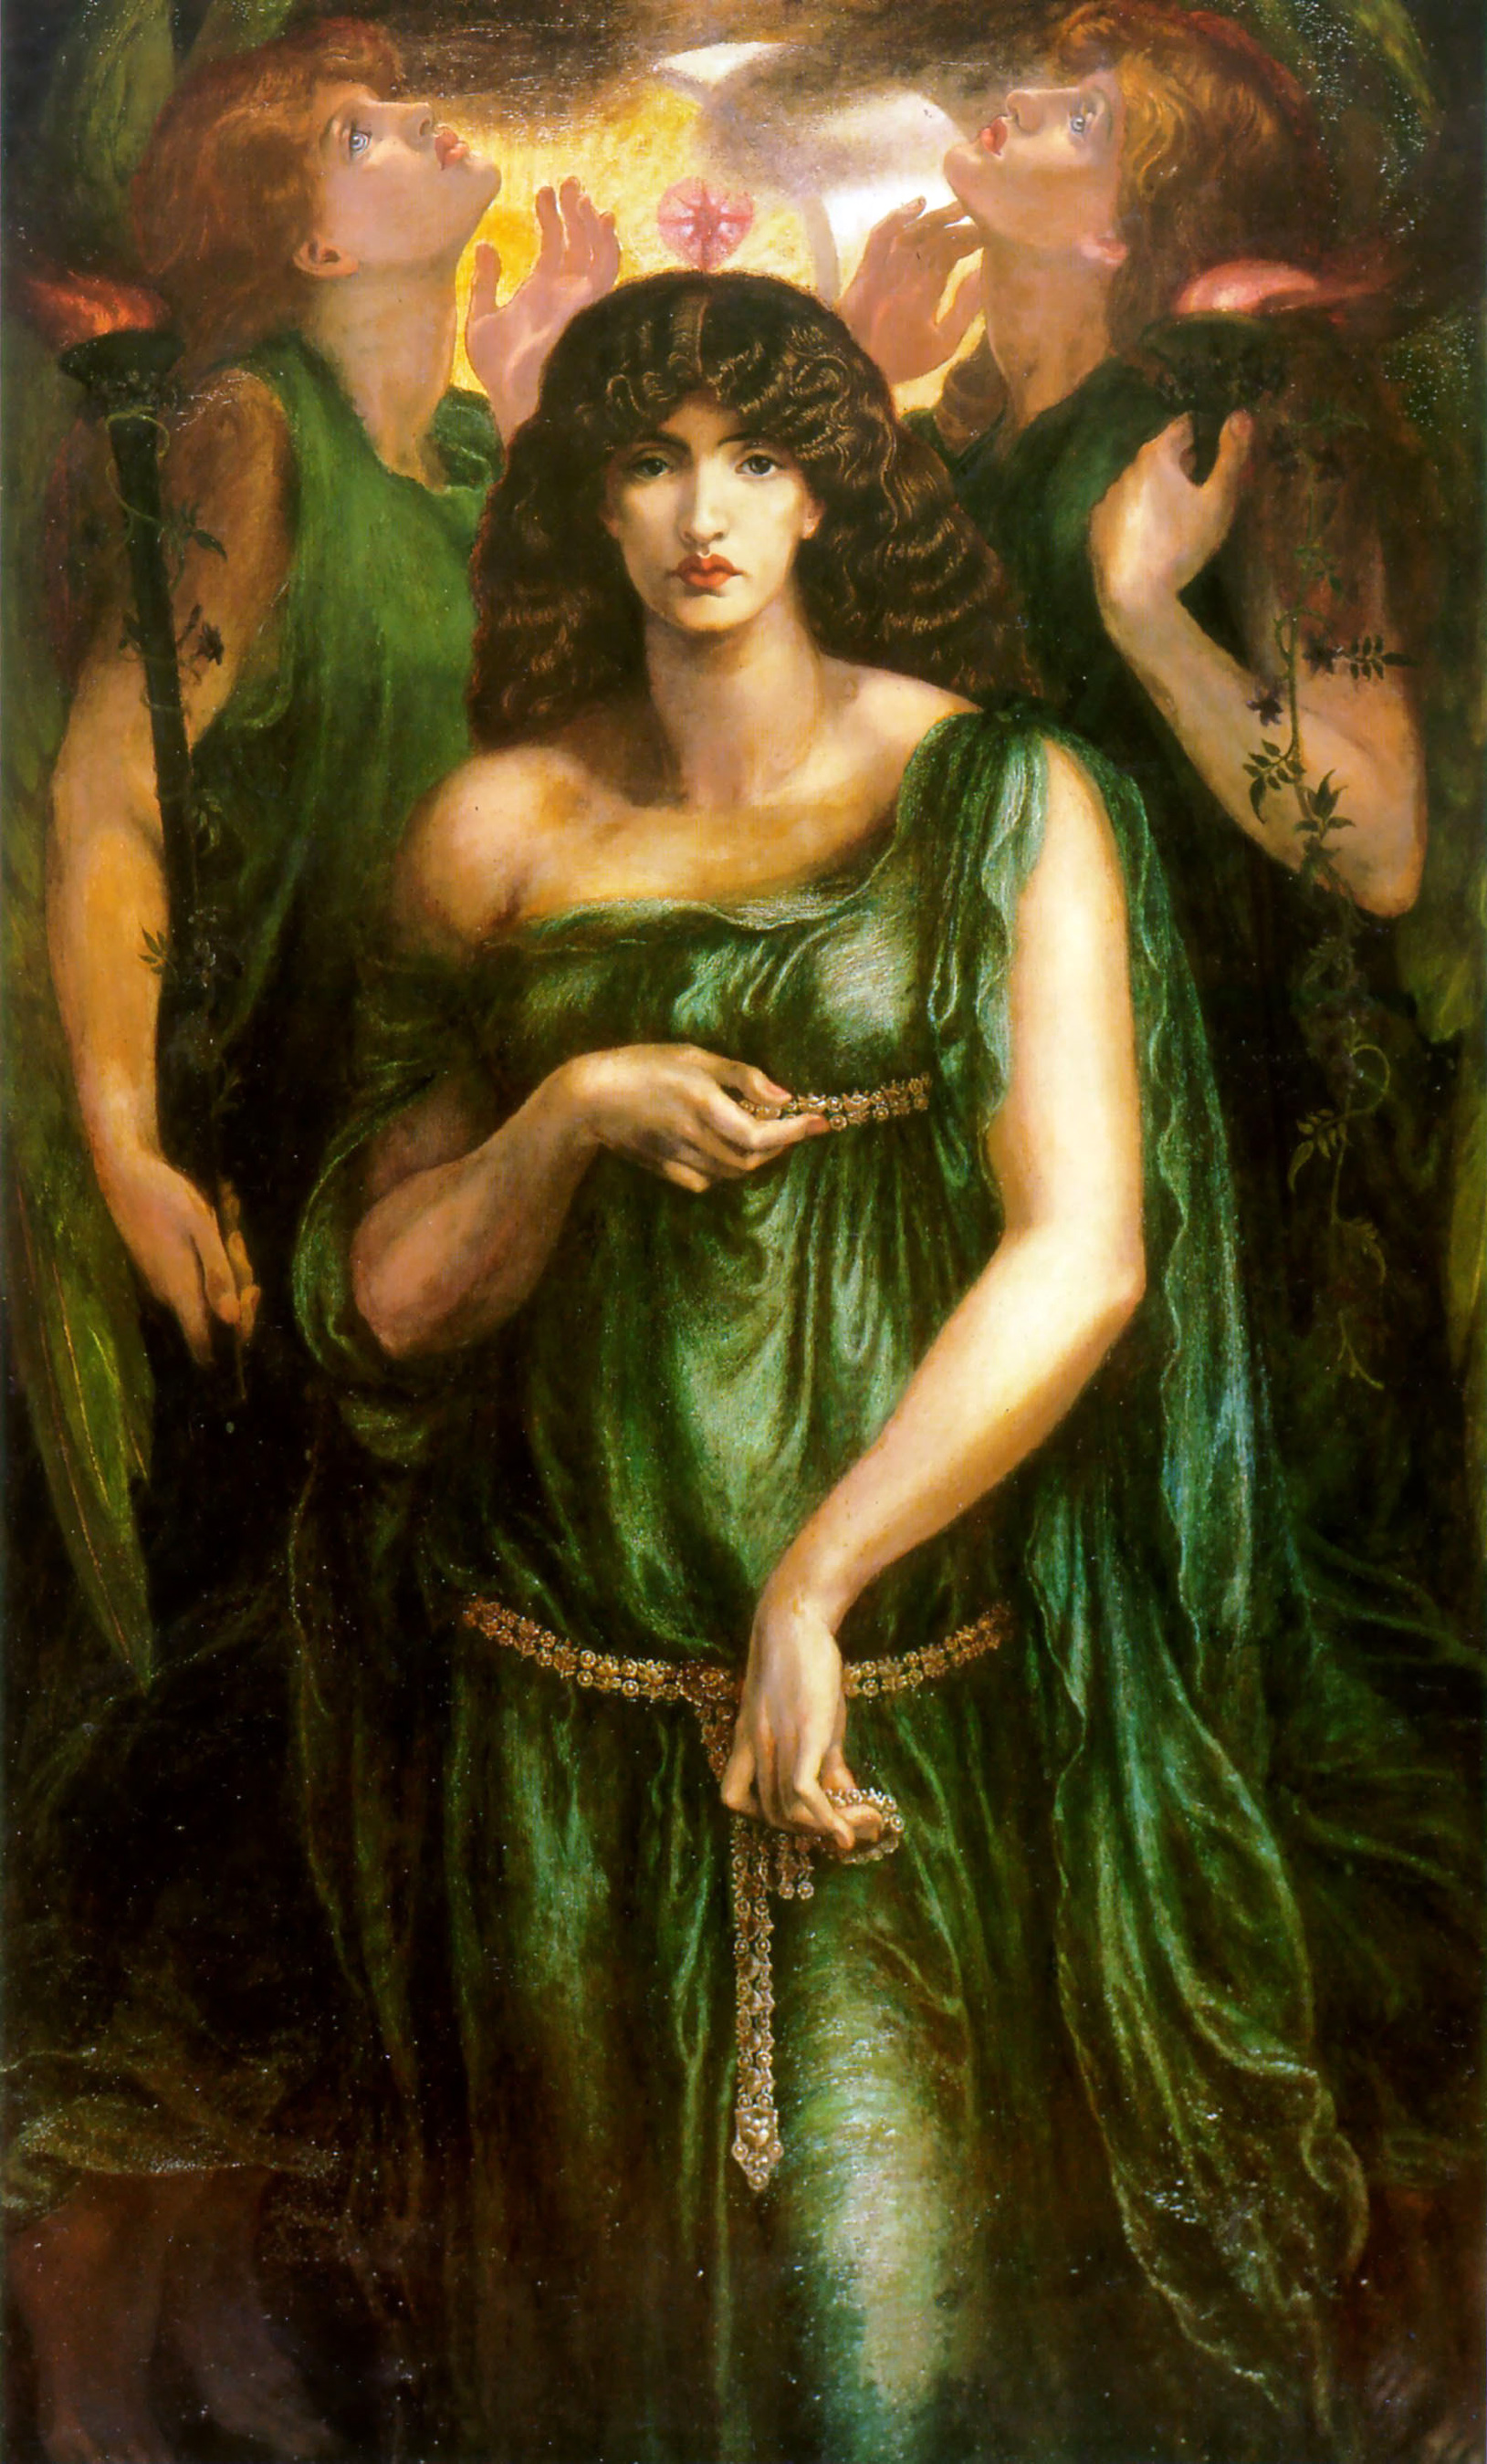 アスタルテ・シリアーカ by Dante Gabriel Rossetti - 1877年 - 185 x 109 cm 